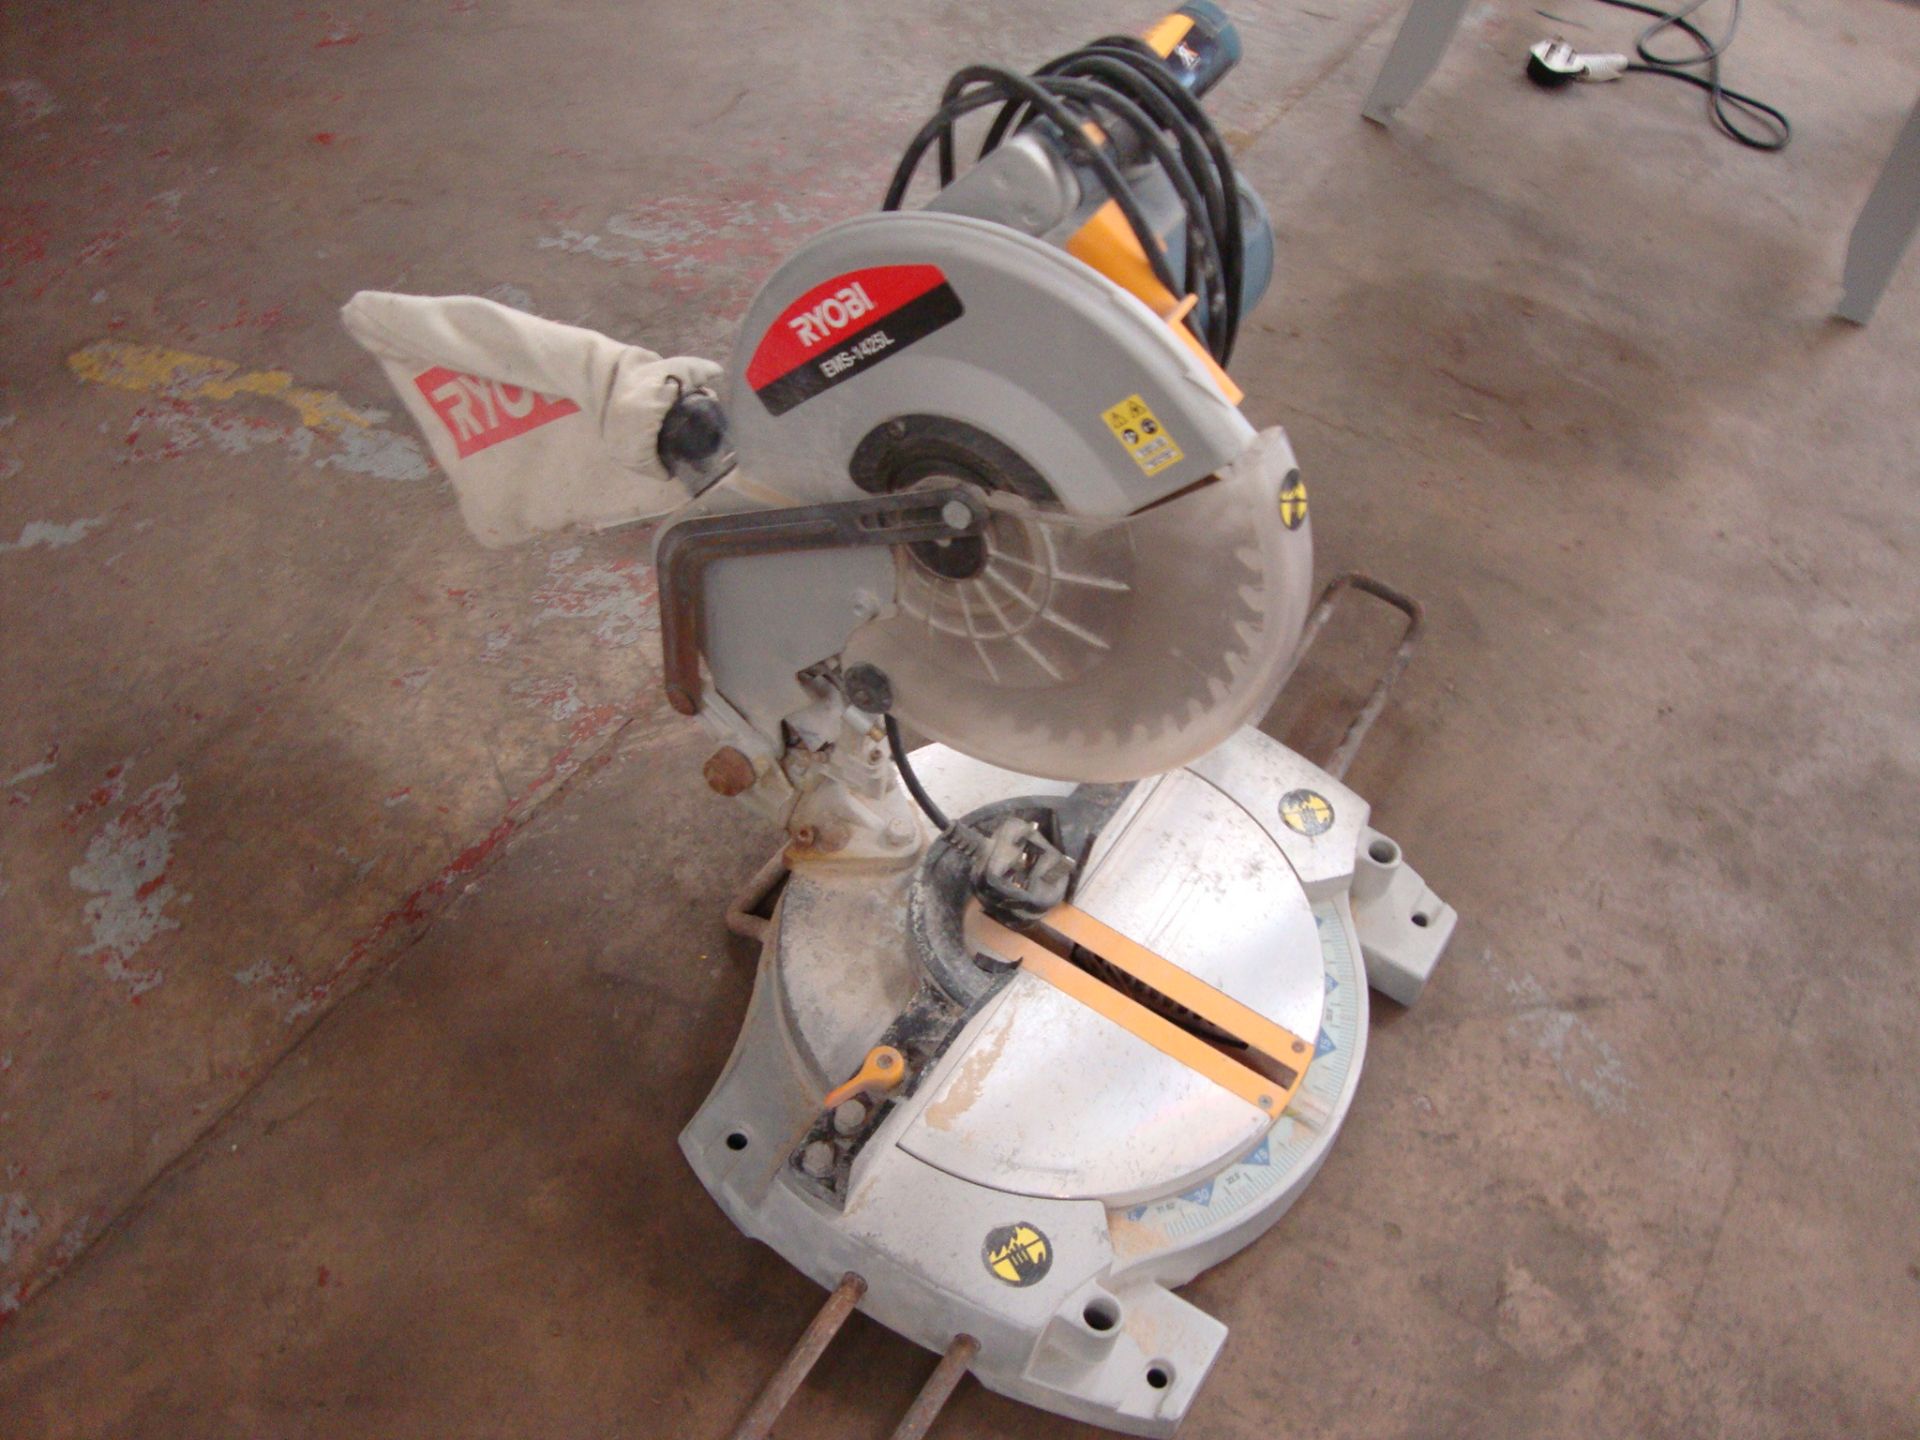 Ryobi model EMS-1425L pull-down mitre chop saw